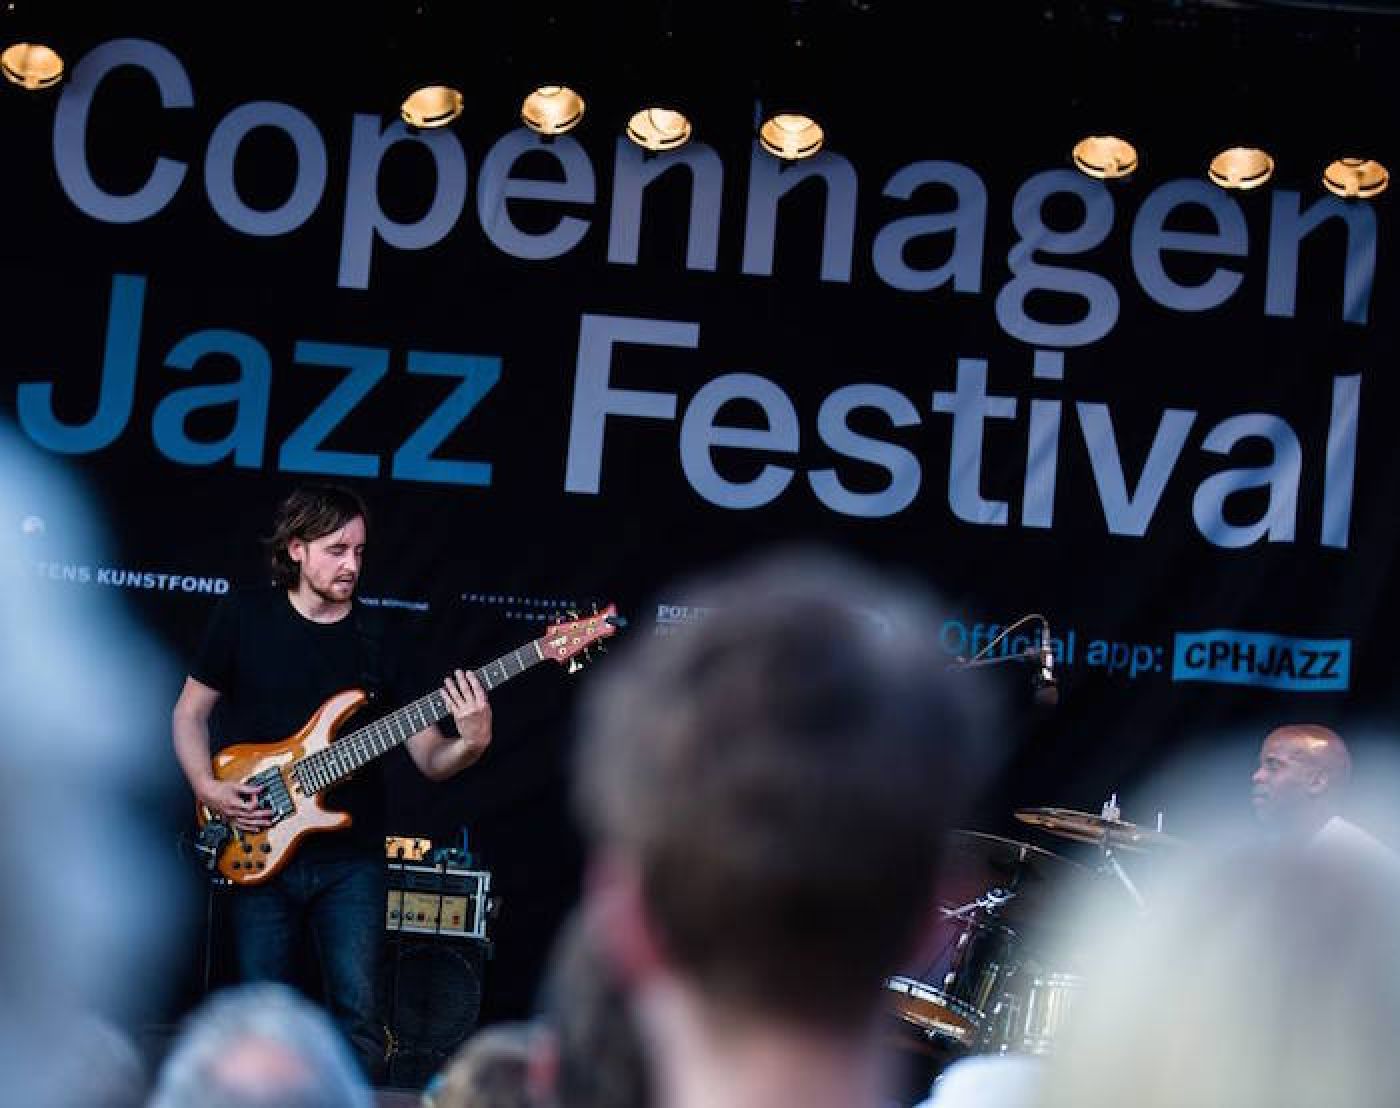 Copenhagen Jazz Festival is in town! Copenhagen Downtown Hostel